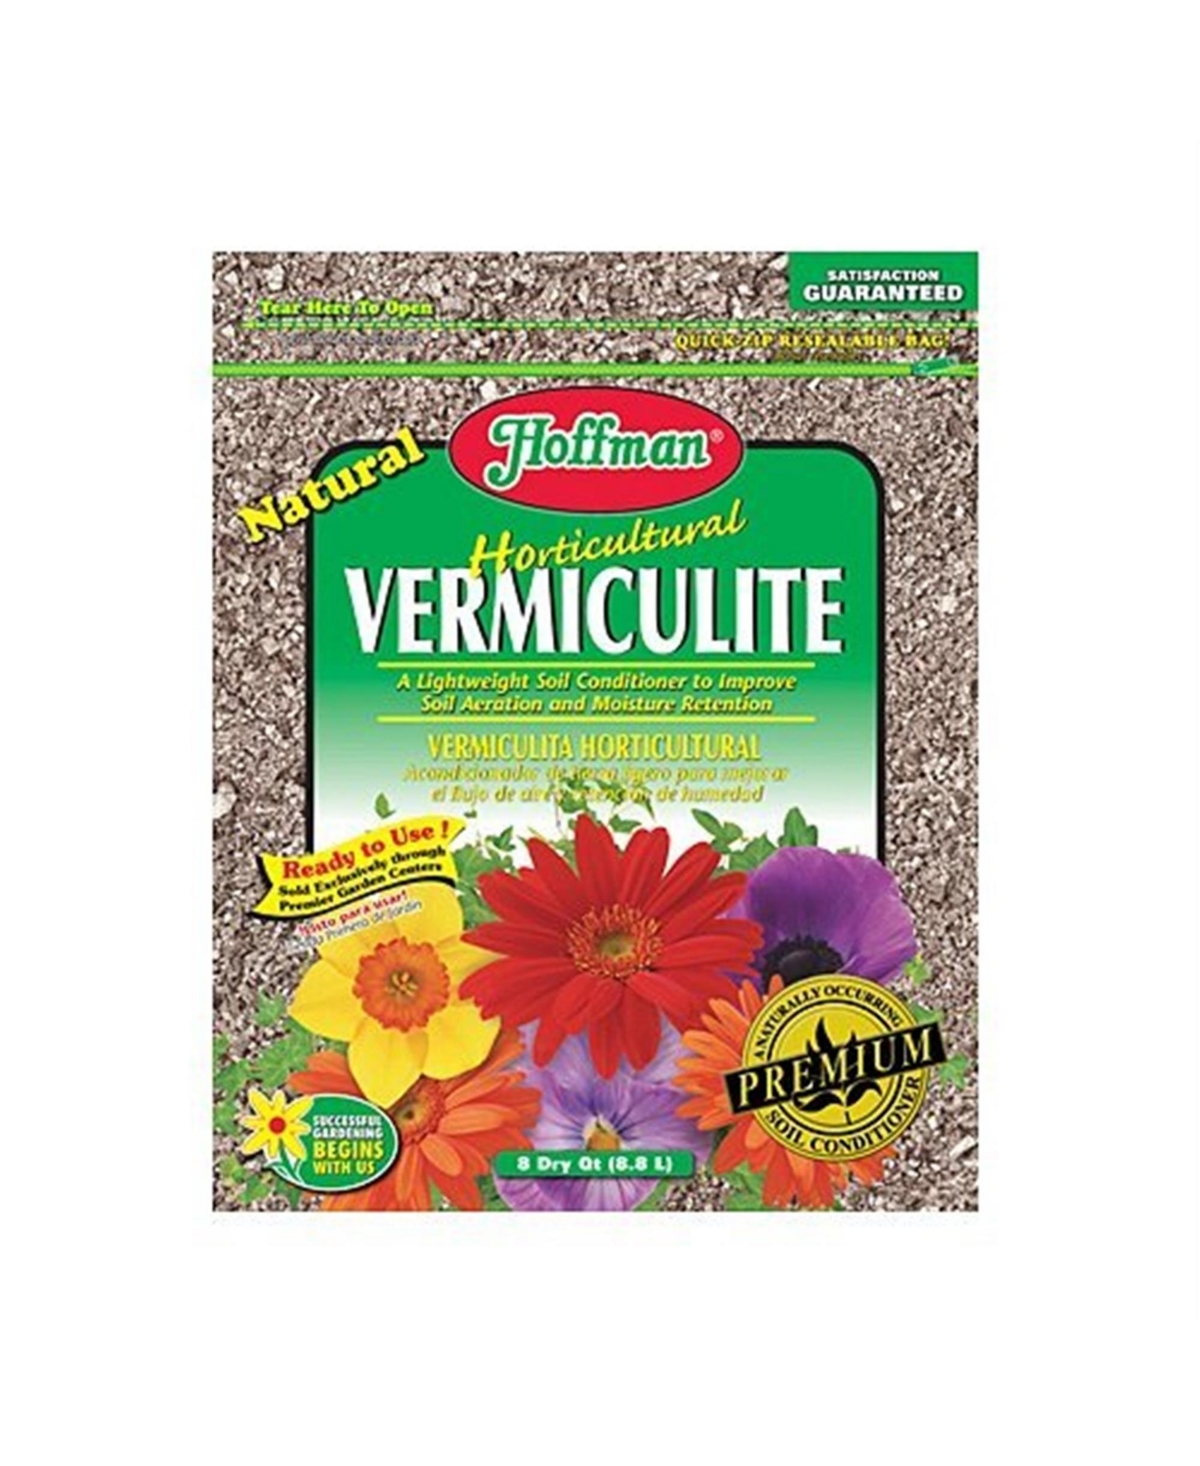 Hoffman 16002 Horticultural Vermiculite Garden Soil Enhancer, 8 Quart - Open Miscellaneous